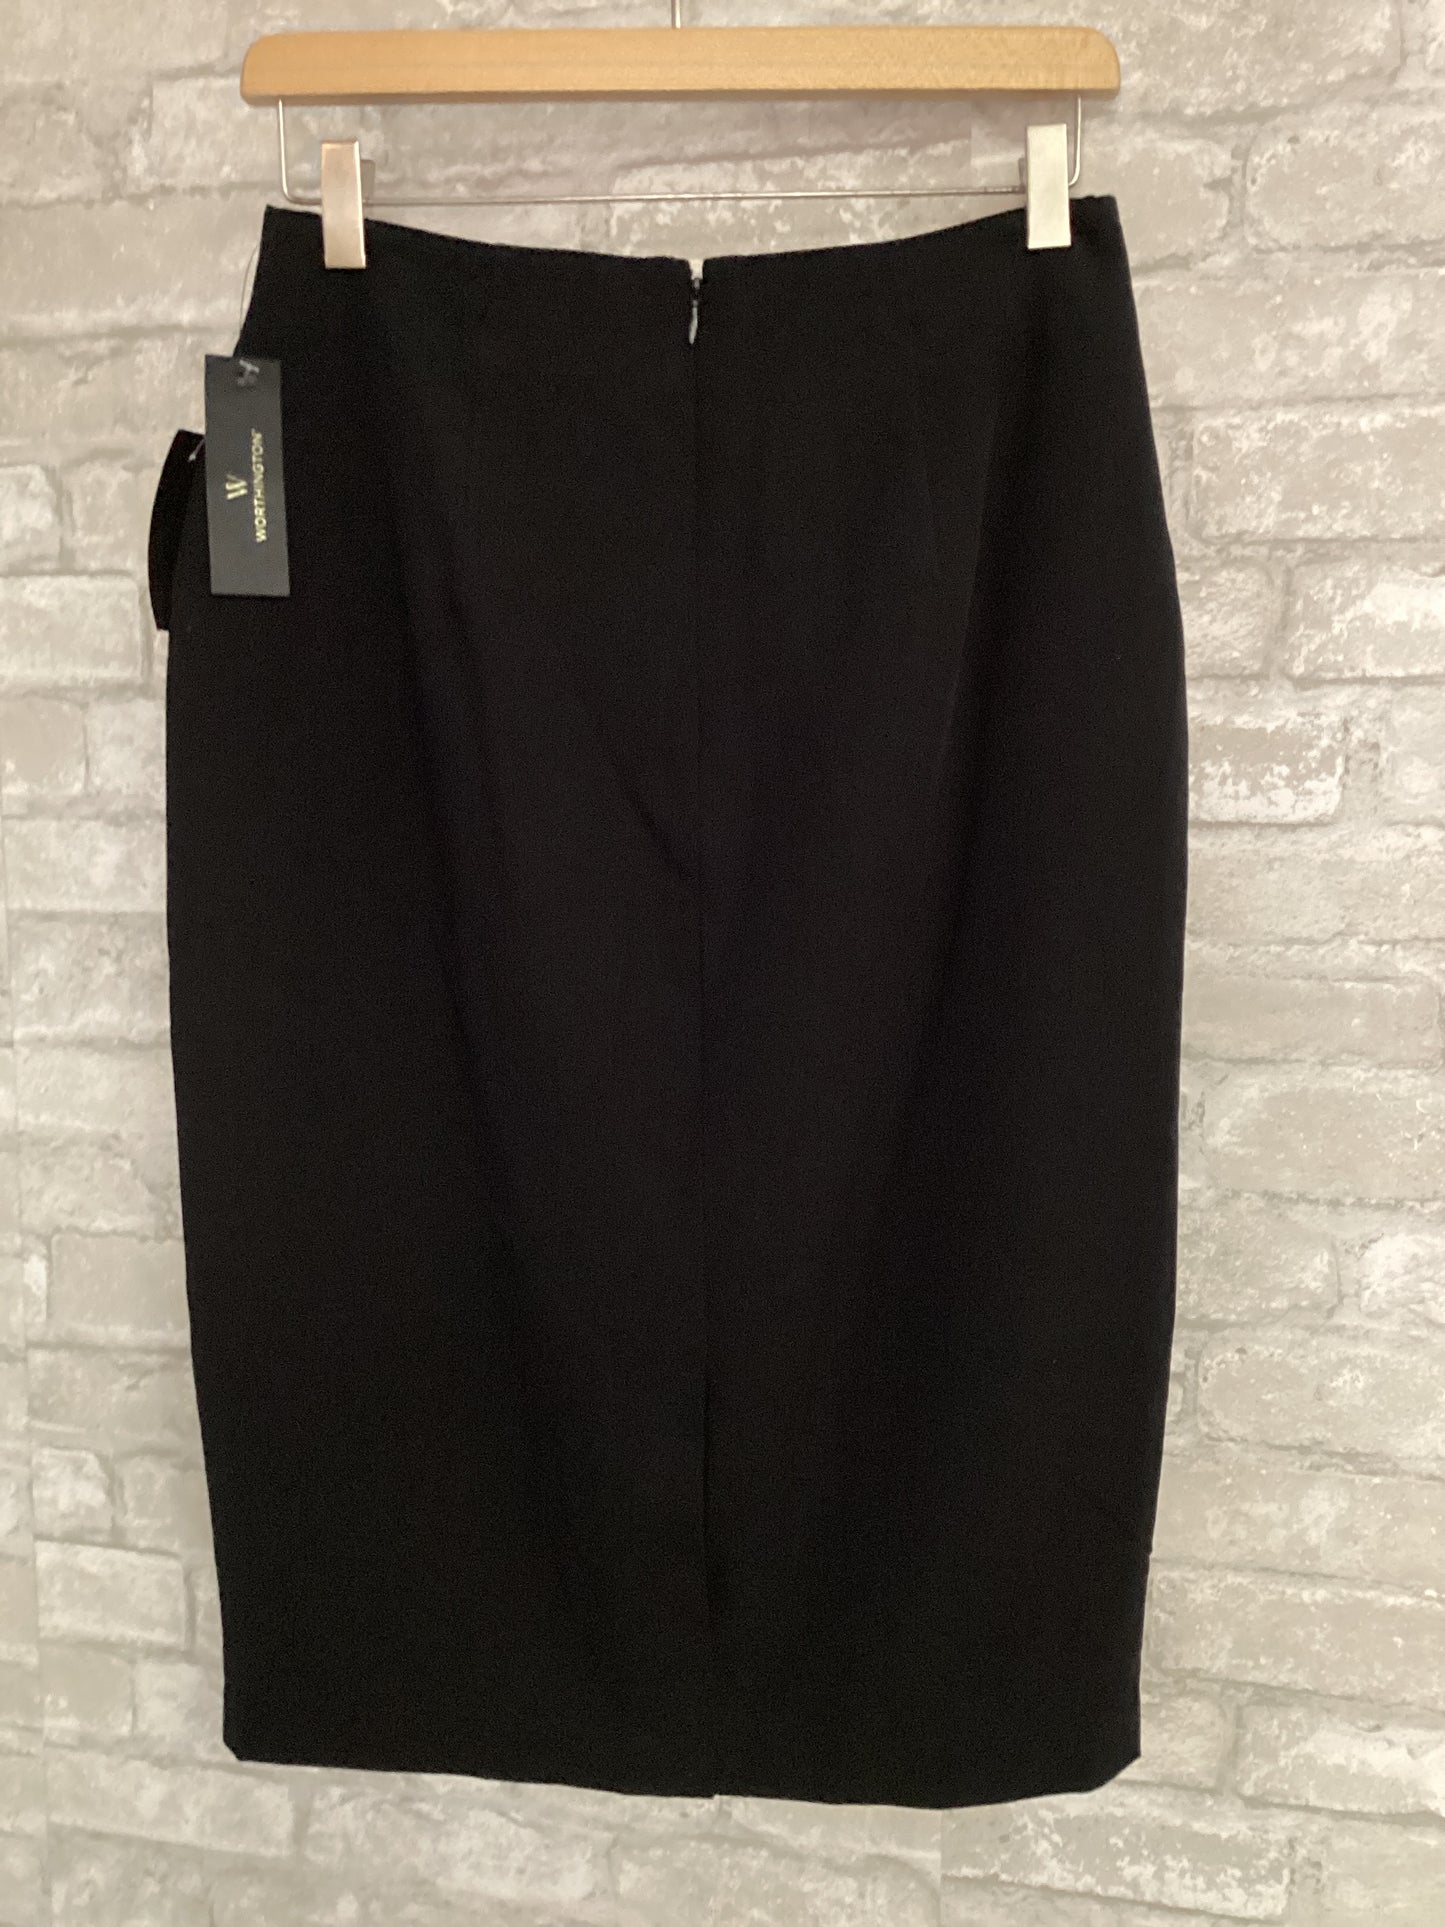 Worthington Size M/8 Black Skirt